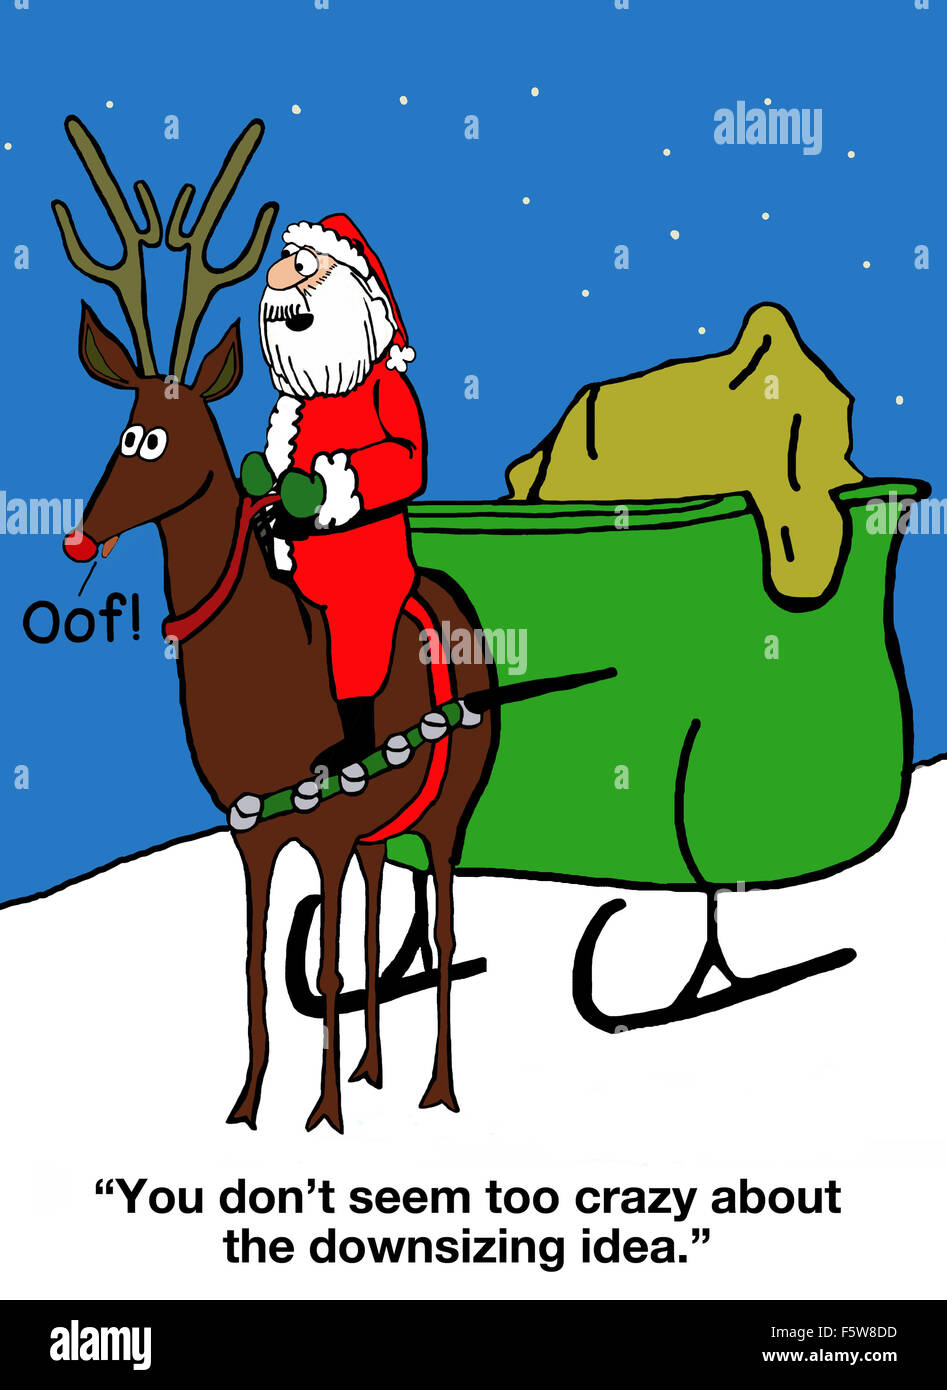 Weihnachten Cartoon nur ein Rentier, nicht neun und Santa sagt, "Sie nicht so verrückt nach dem Downsizing-Idee scheinen". Stockfoto